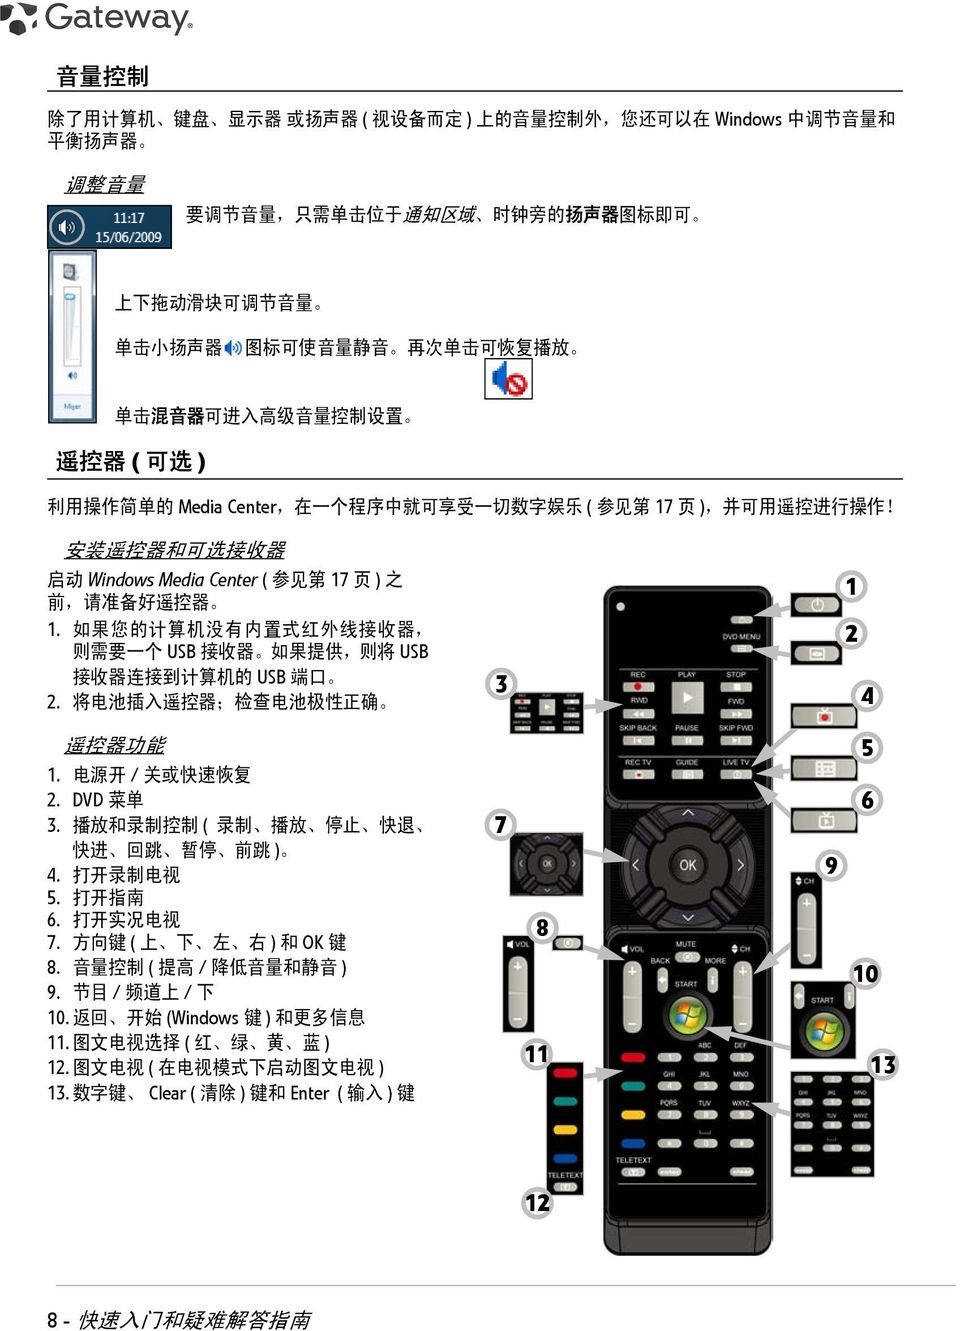 安 装 遥 控 器 和 可 选 接 收 器 启 动 Windows Media Center ( 参 见 第 17 页 ) 之 前, 请 准 备 好 遥 控 器 1. 如 果 您 的 计 算 机 没 有 内 置 式 红 外 线 接 收 器, 则 需 要 一 个 USB 接 收 器 如 果 提 供, 则 将 USB 接 收 器 连 接 到 计 算 机 的 USB 端 口 2.